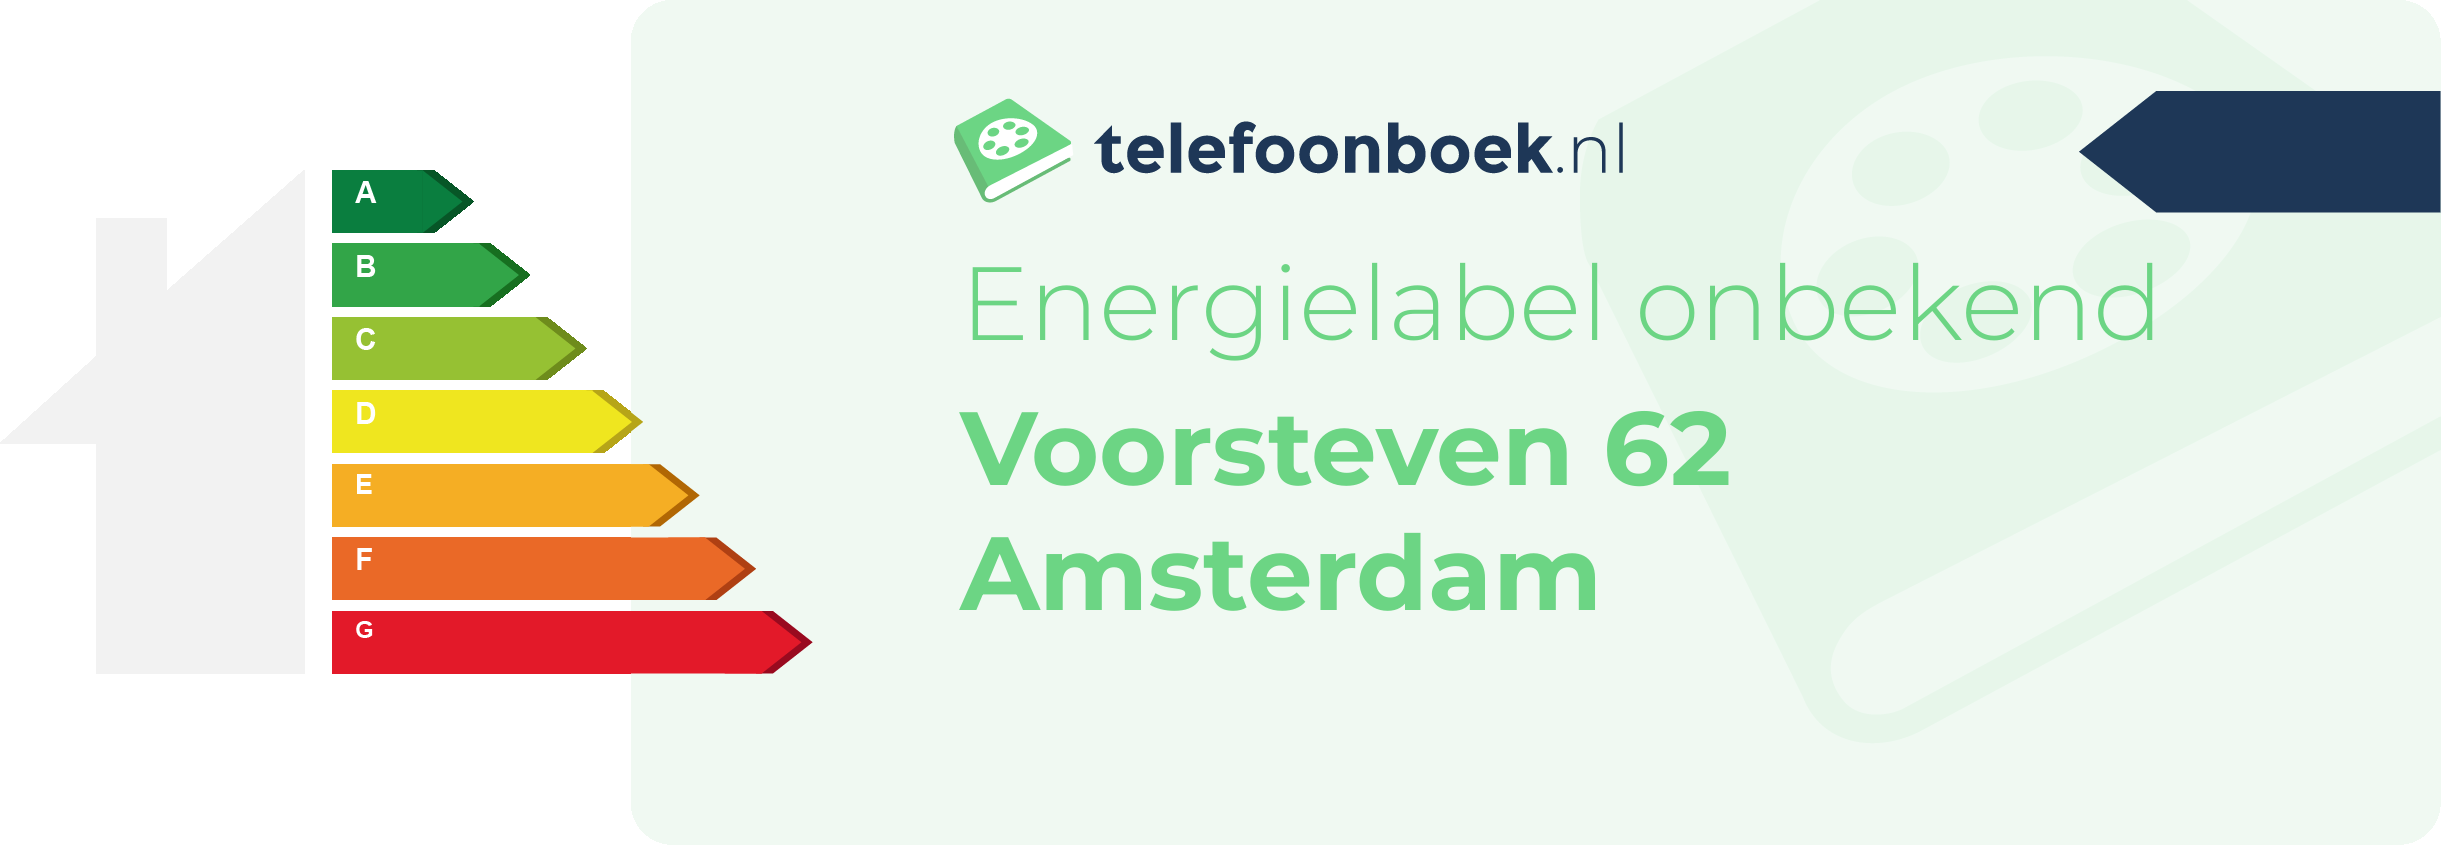 Energielabel Voorsteven 62 Amsterdam